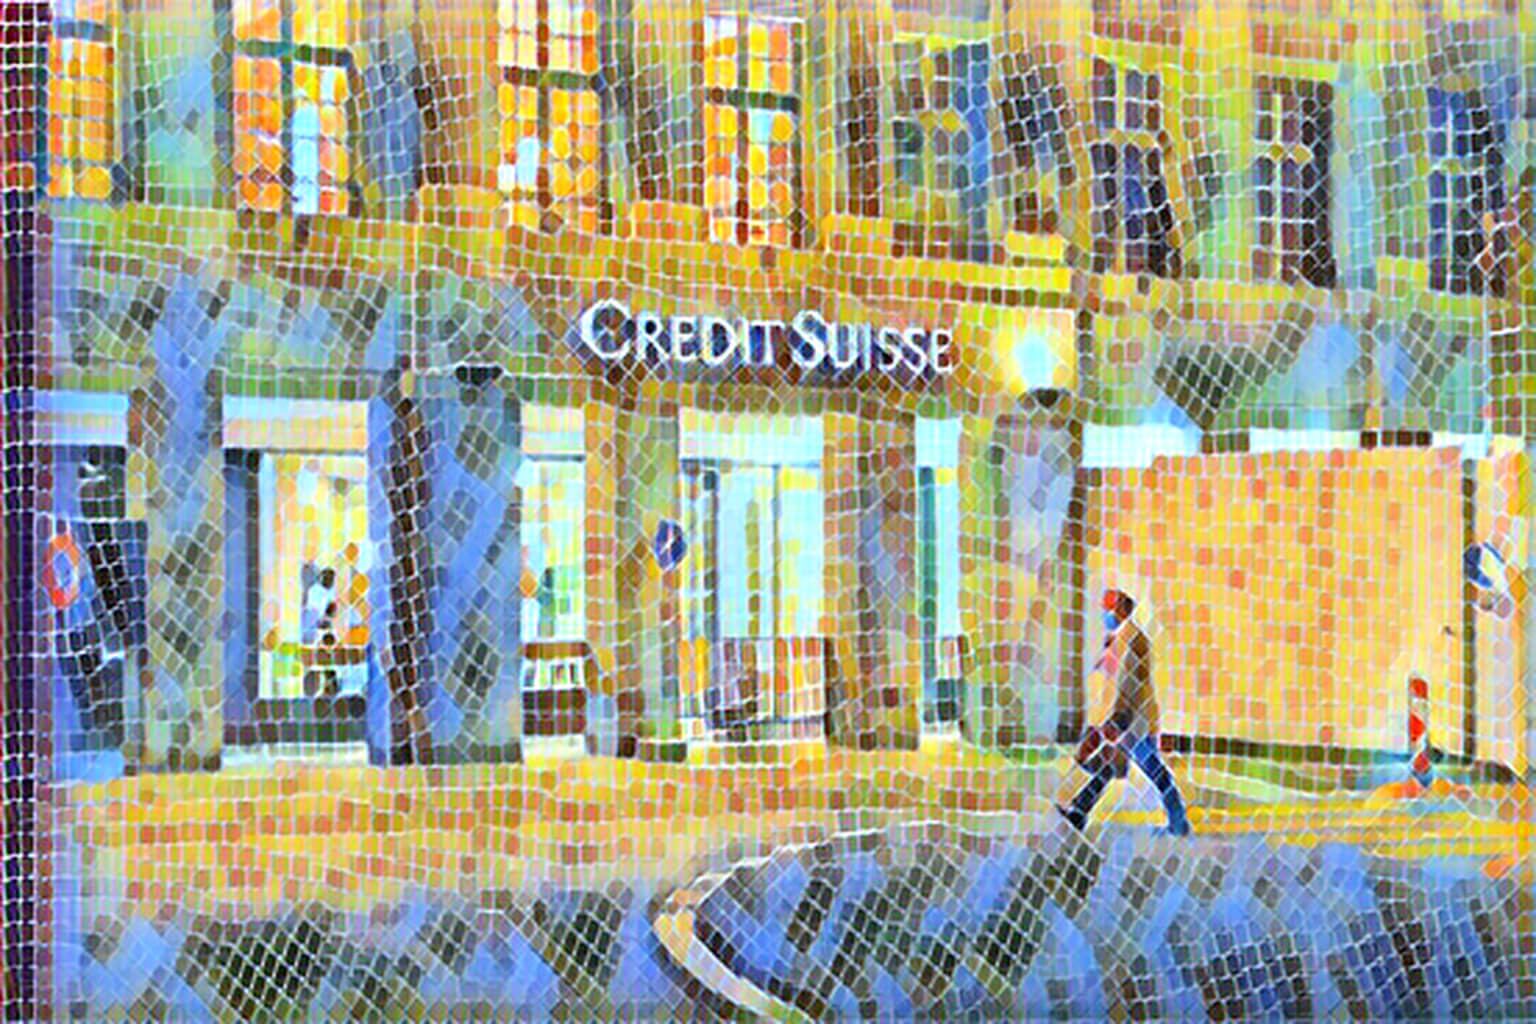   Credit Suisse      78%